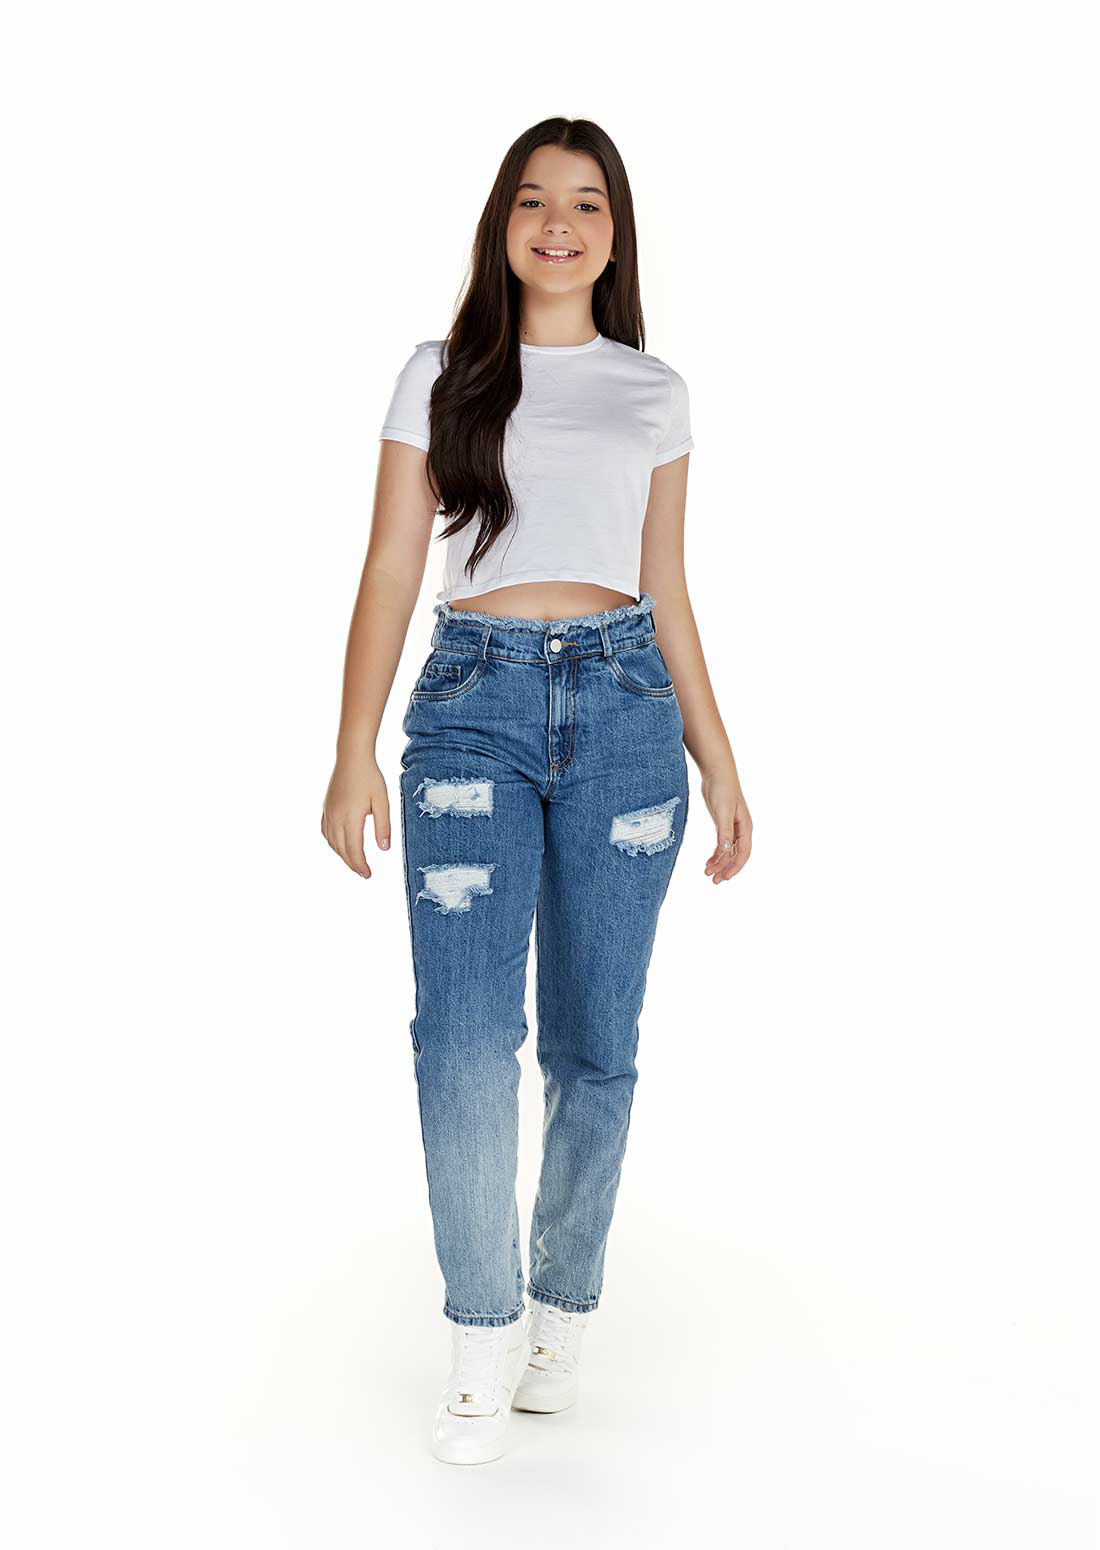 Jeans de moda para niñas y adolescentes | Yoyo Jeans - yoyojeans